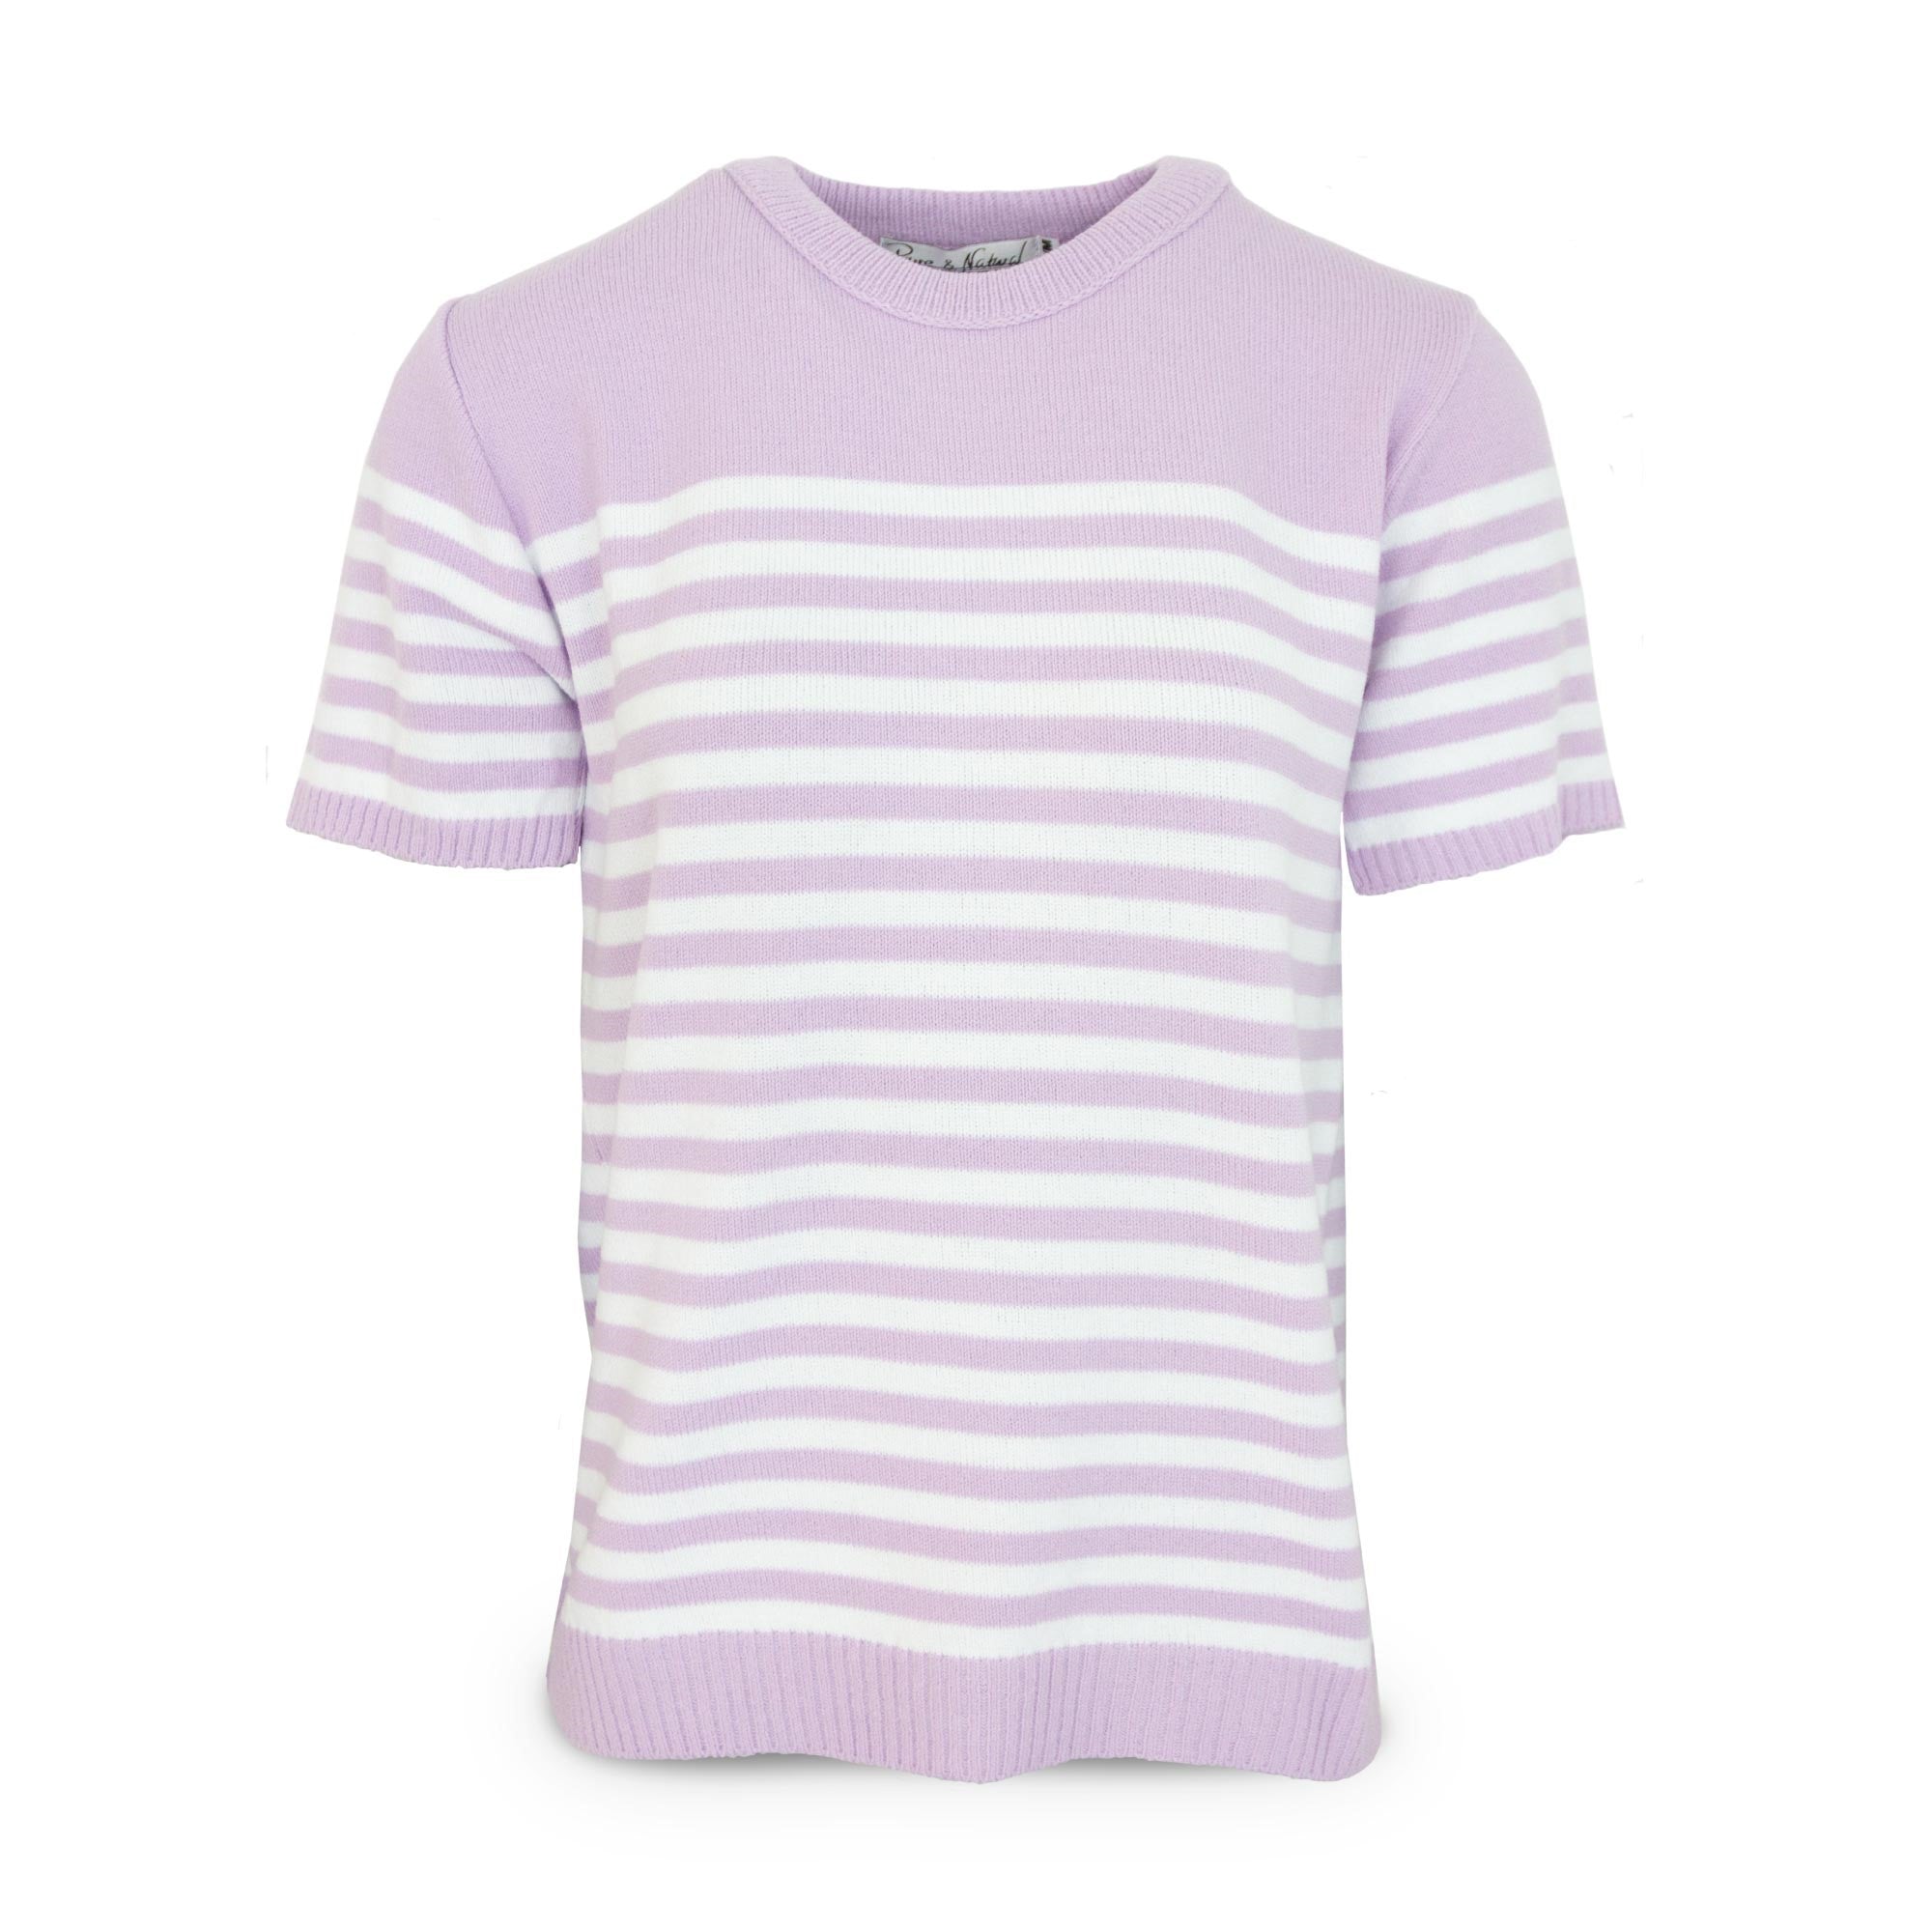 Ladies Stripe Sweater - Lilac - M/L - TJ Hughes Pink